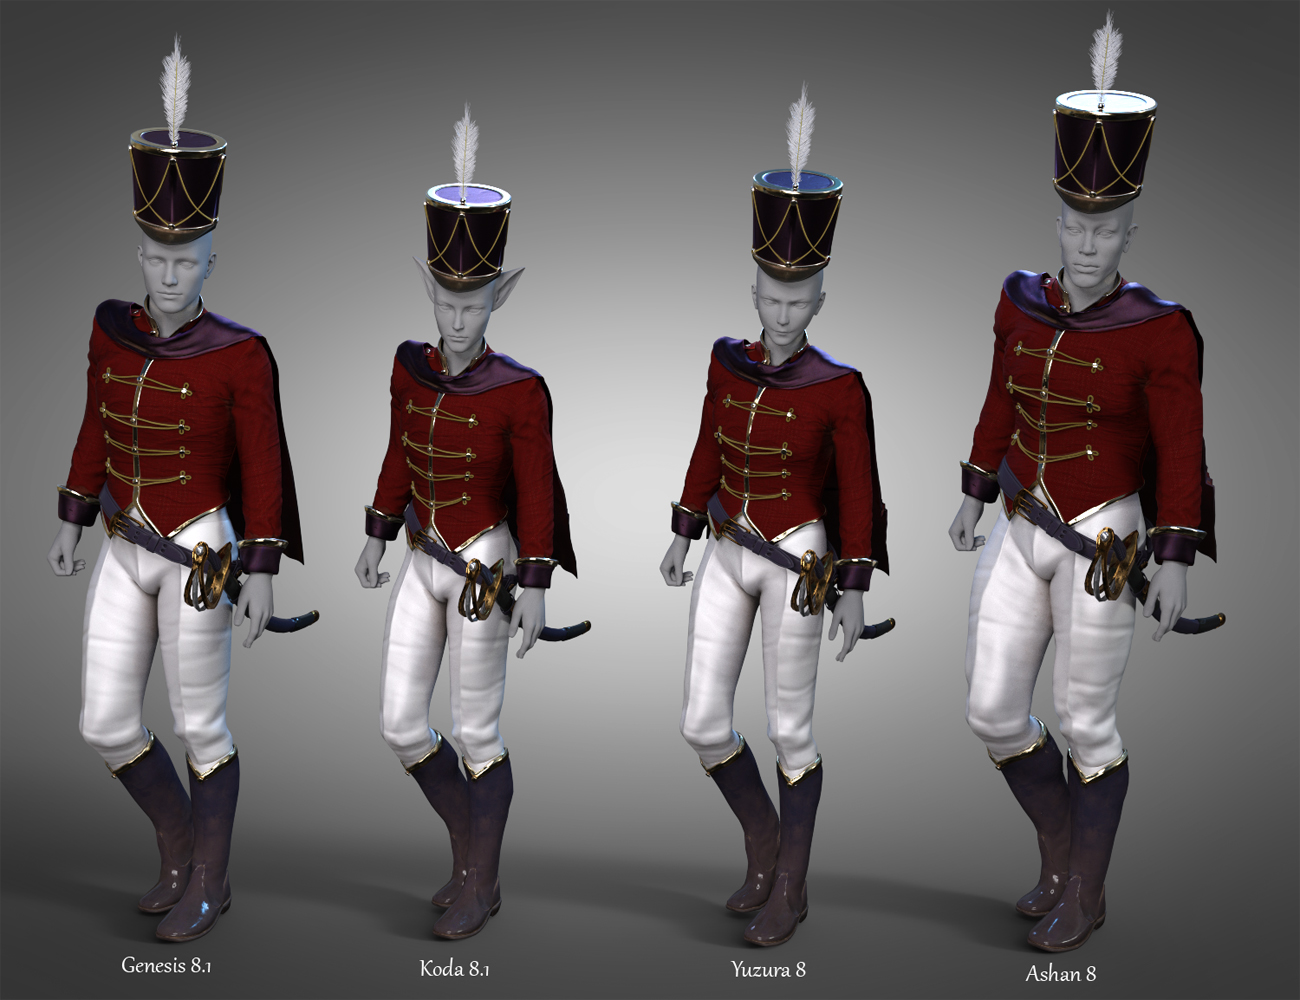 Nutcracker Uniform for Genesis 8.1 Males by: JoeQuick, 3D Models by Daz 3D